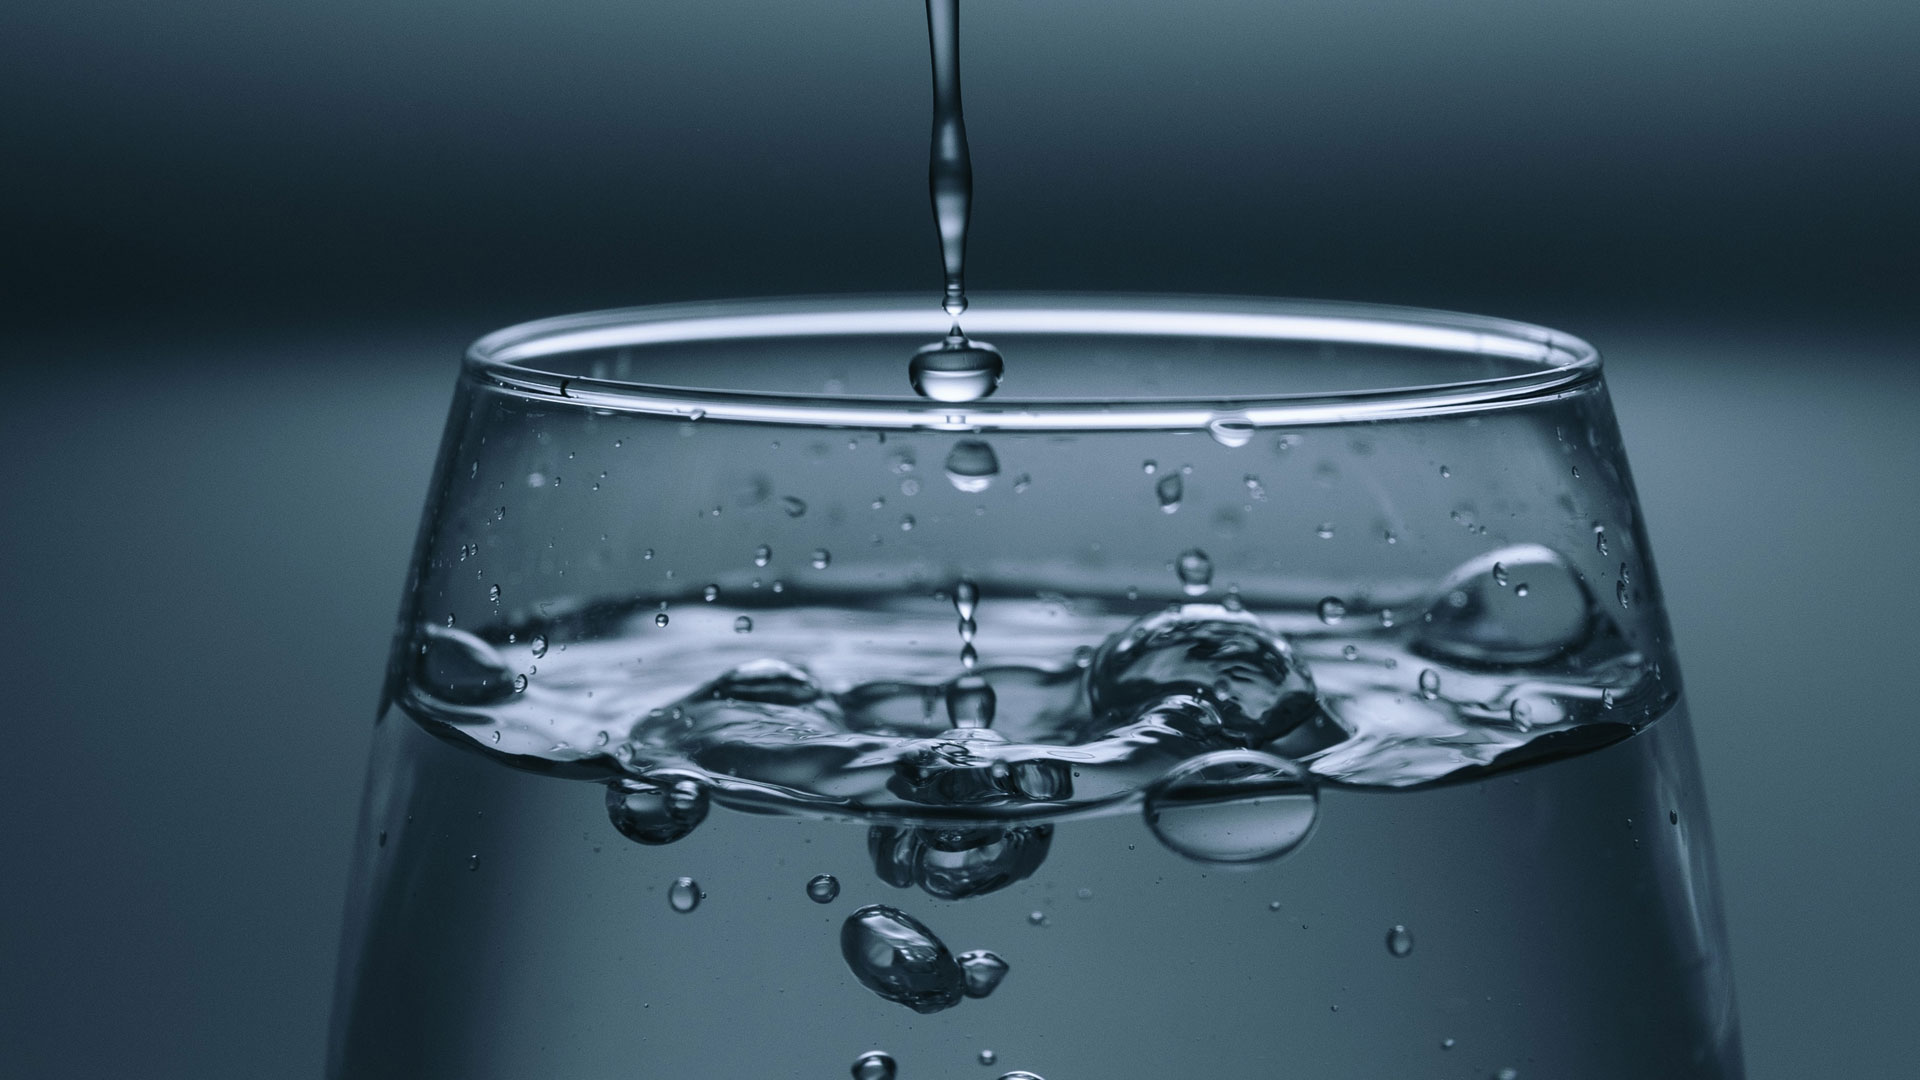 Wassersprudler - Sprudel dir dein eigenes leckeres Wasser